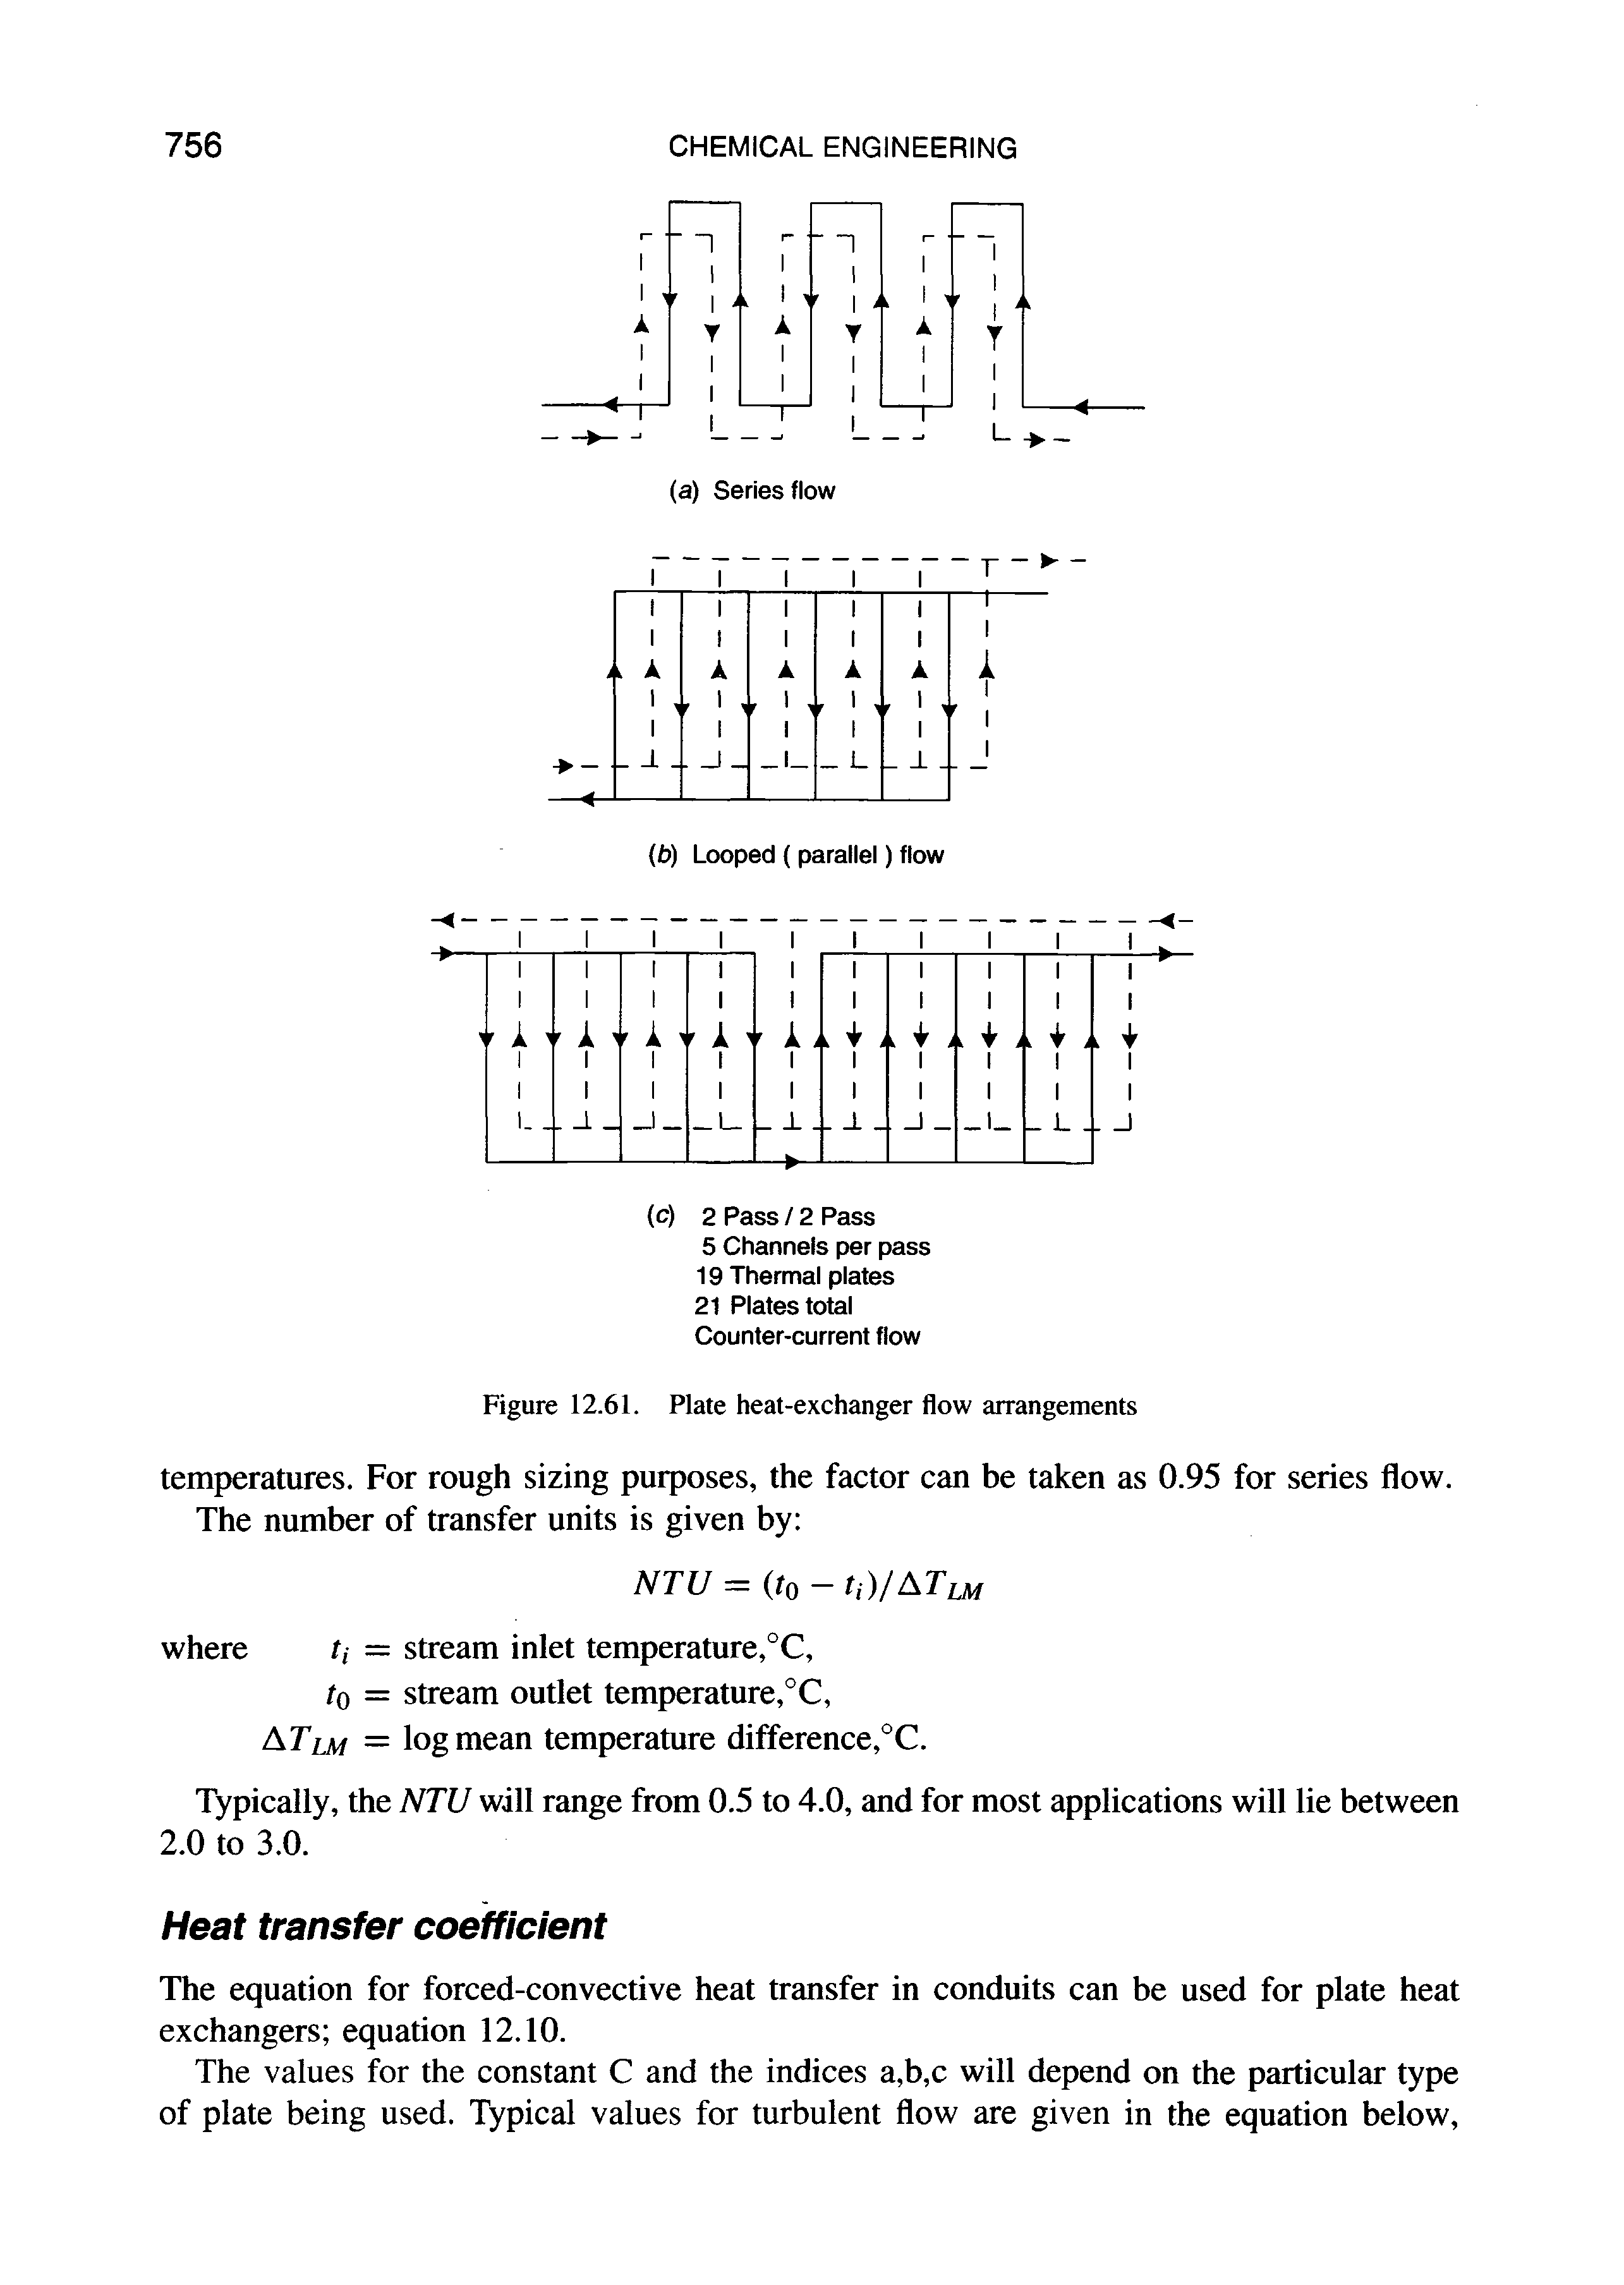 Figure 12.61. Plate heat-exchanger flow arrangements...